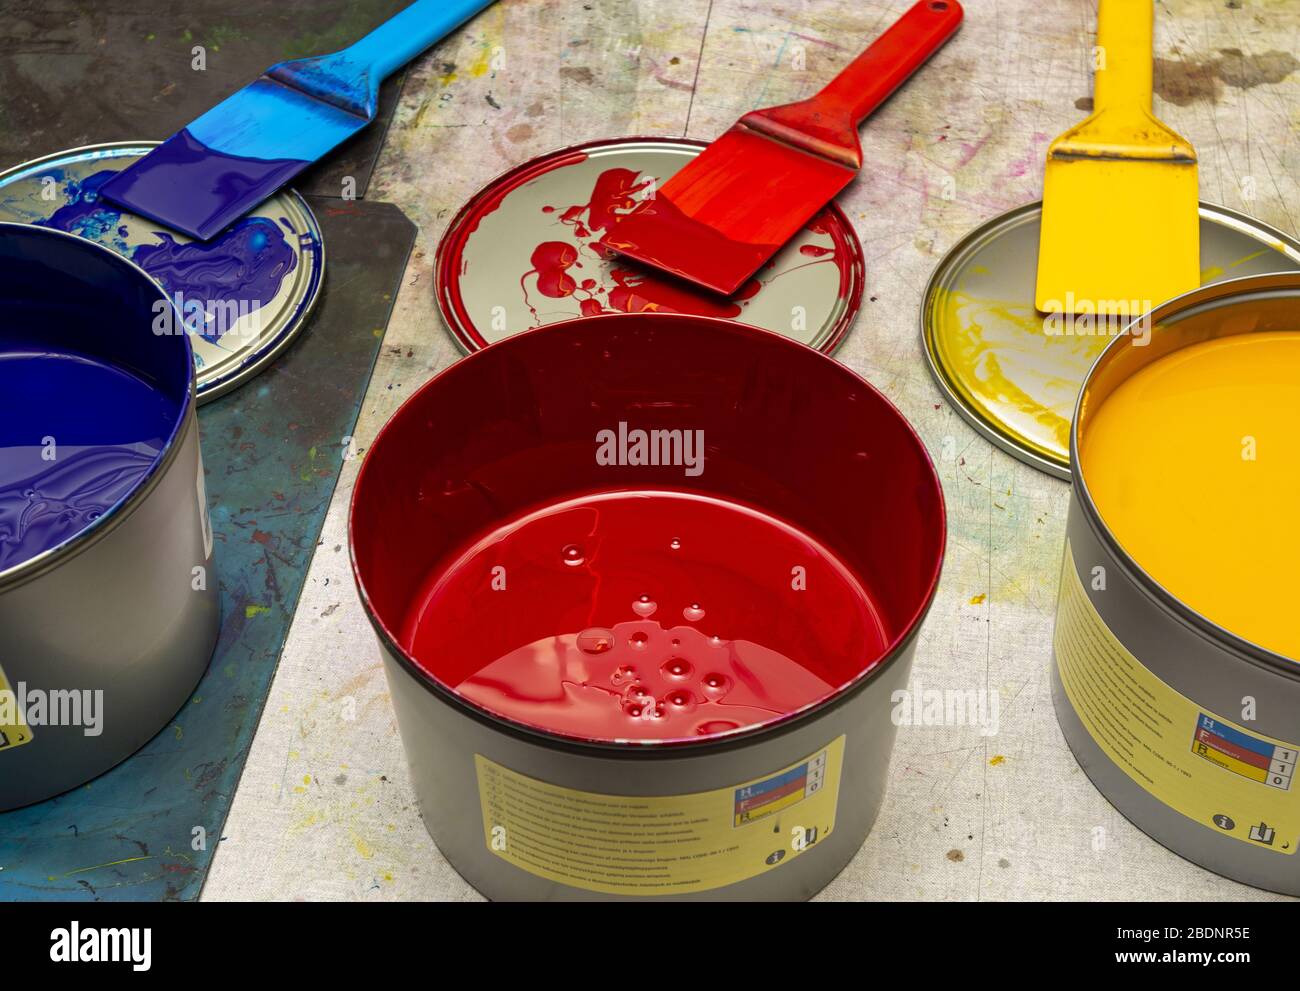 Tinta de impresión azul, roja y amarilla para la impresora Heidelberg de cuatro colores Foto de stock